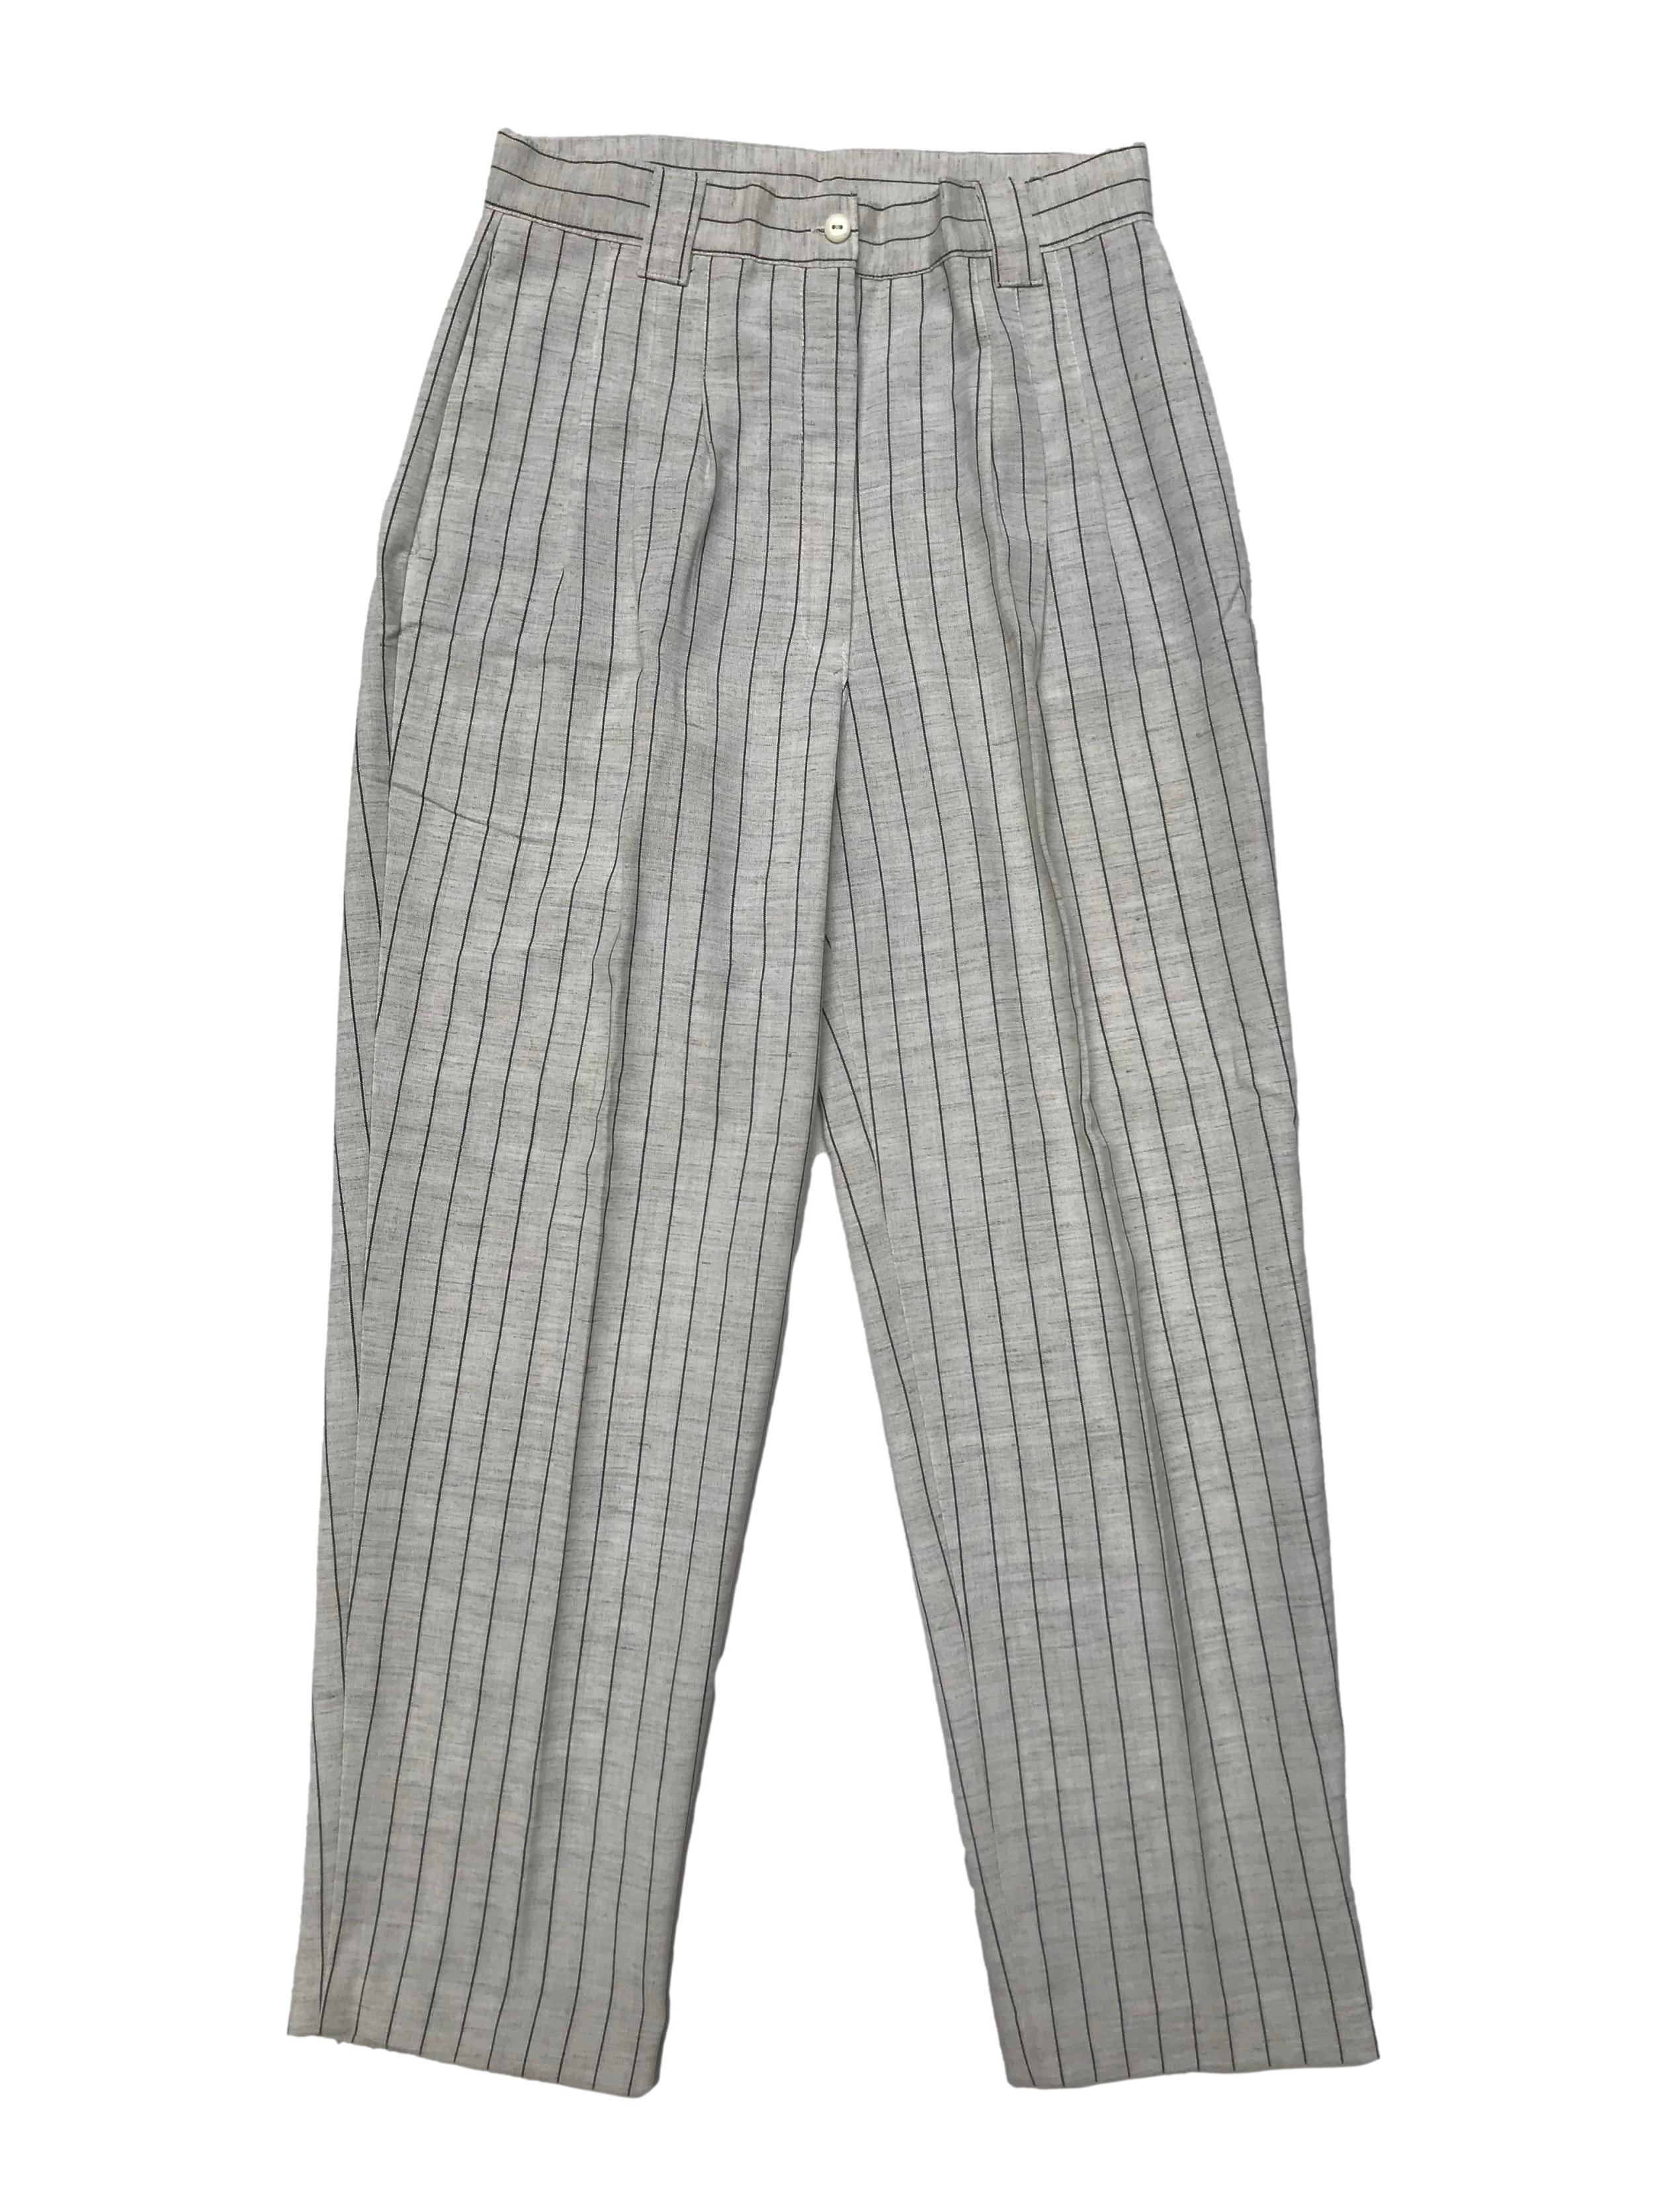 Pantalón vintage crema con líneas grises, pliegues delanteros estilo slouchy, tiene bolsillos laterales. Cintura 72cm Largo 96cm